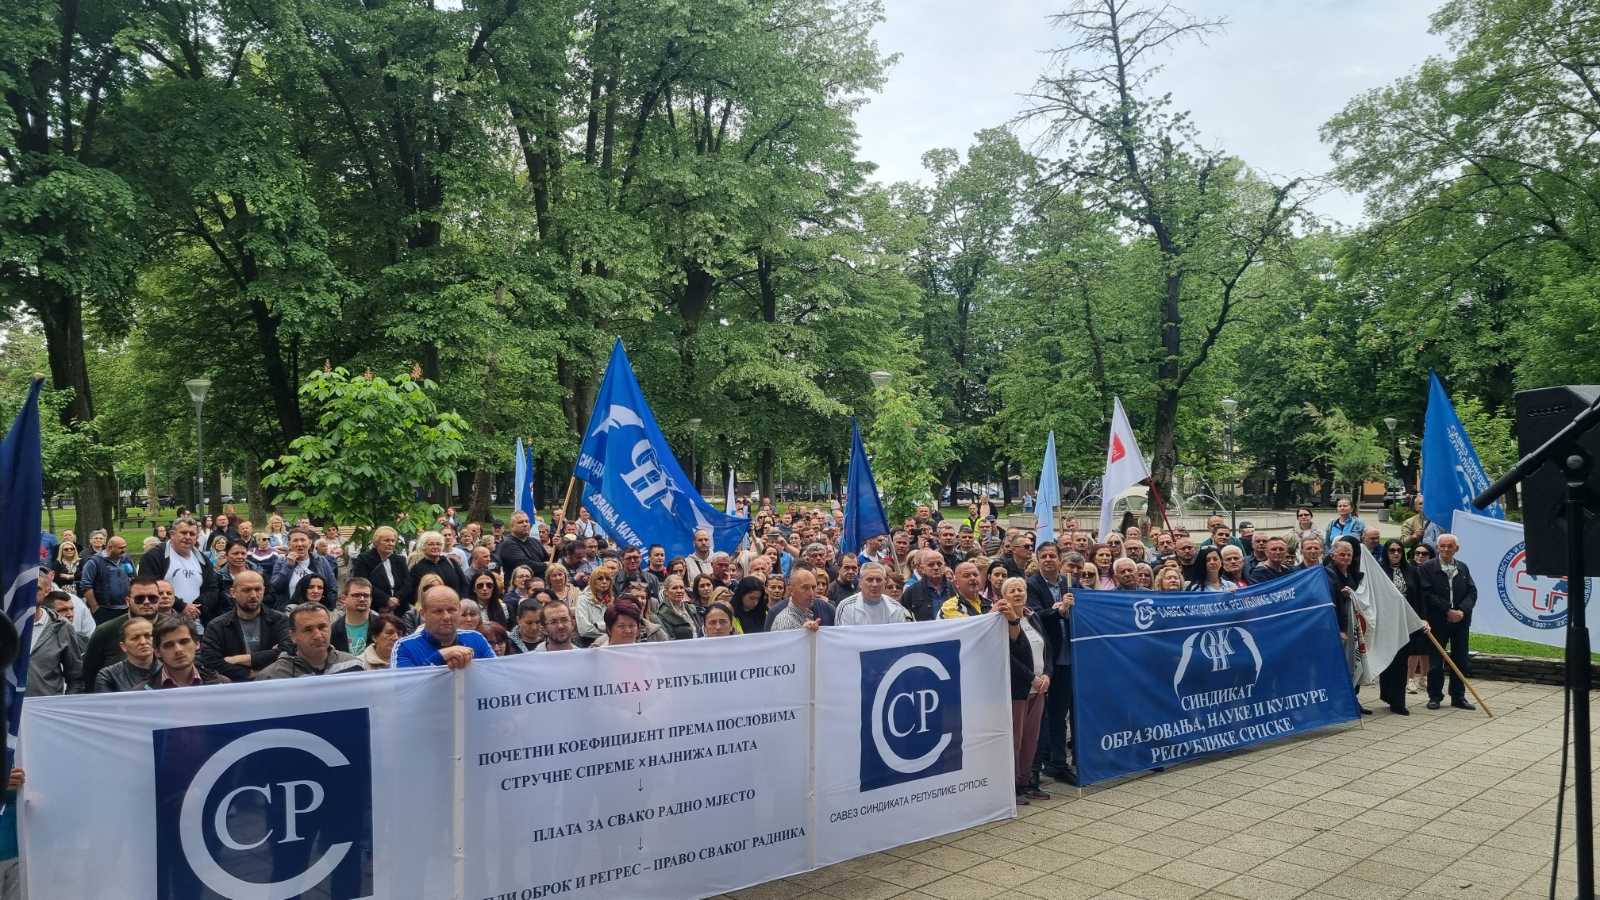 Prvomajski protest radnika u Banjaluci: "Najniža plata nije proizvela negativne efekte"